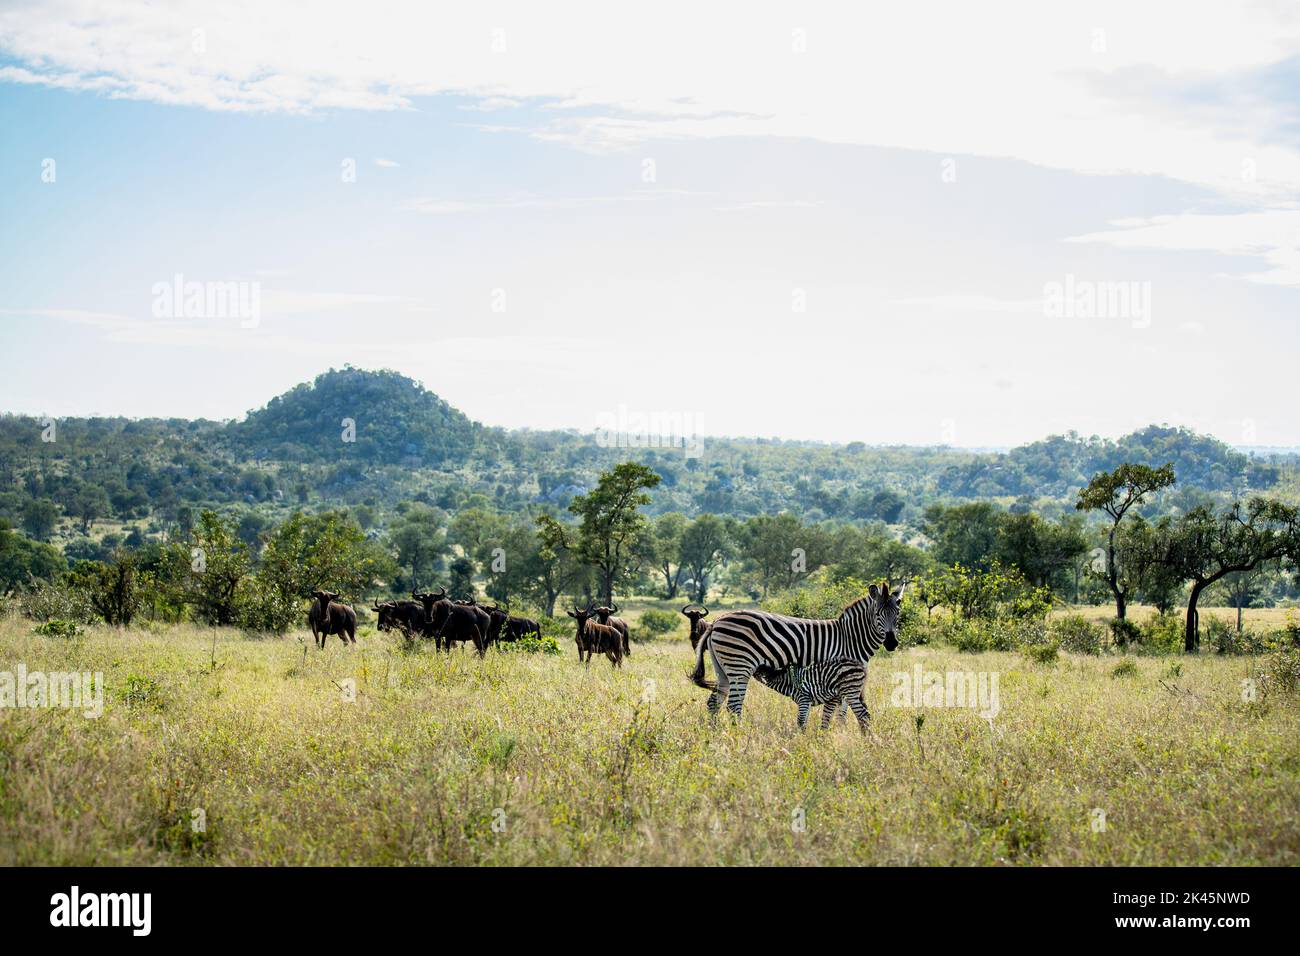 Ein weibliches Zebra und ihr Baby stillen, Equus quagga, mit Wildebest, Connochaetes , im Hintergrund. Stockfoto